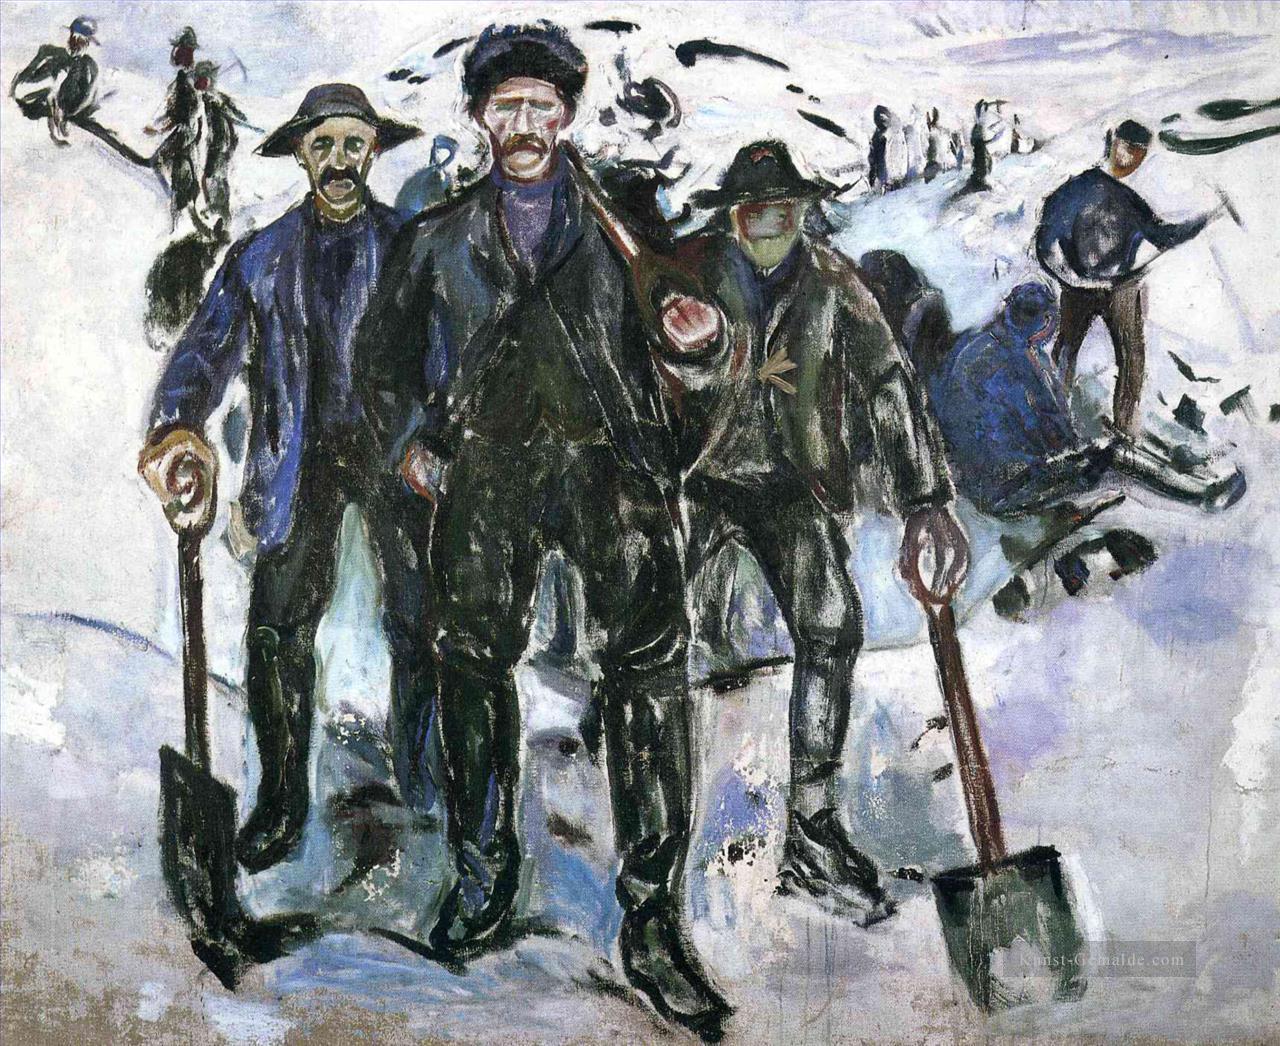 Arbeiter im Schnee 1913 Edvard Munch Ölgemälde